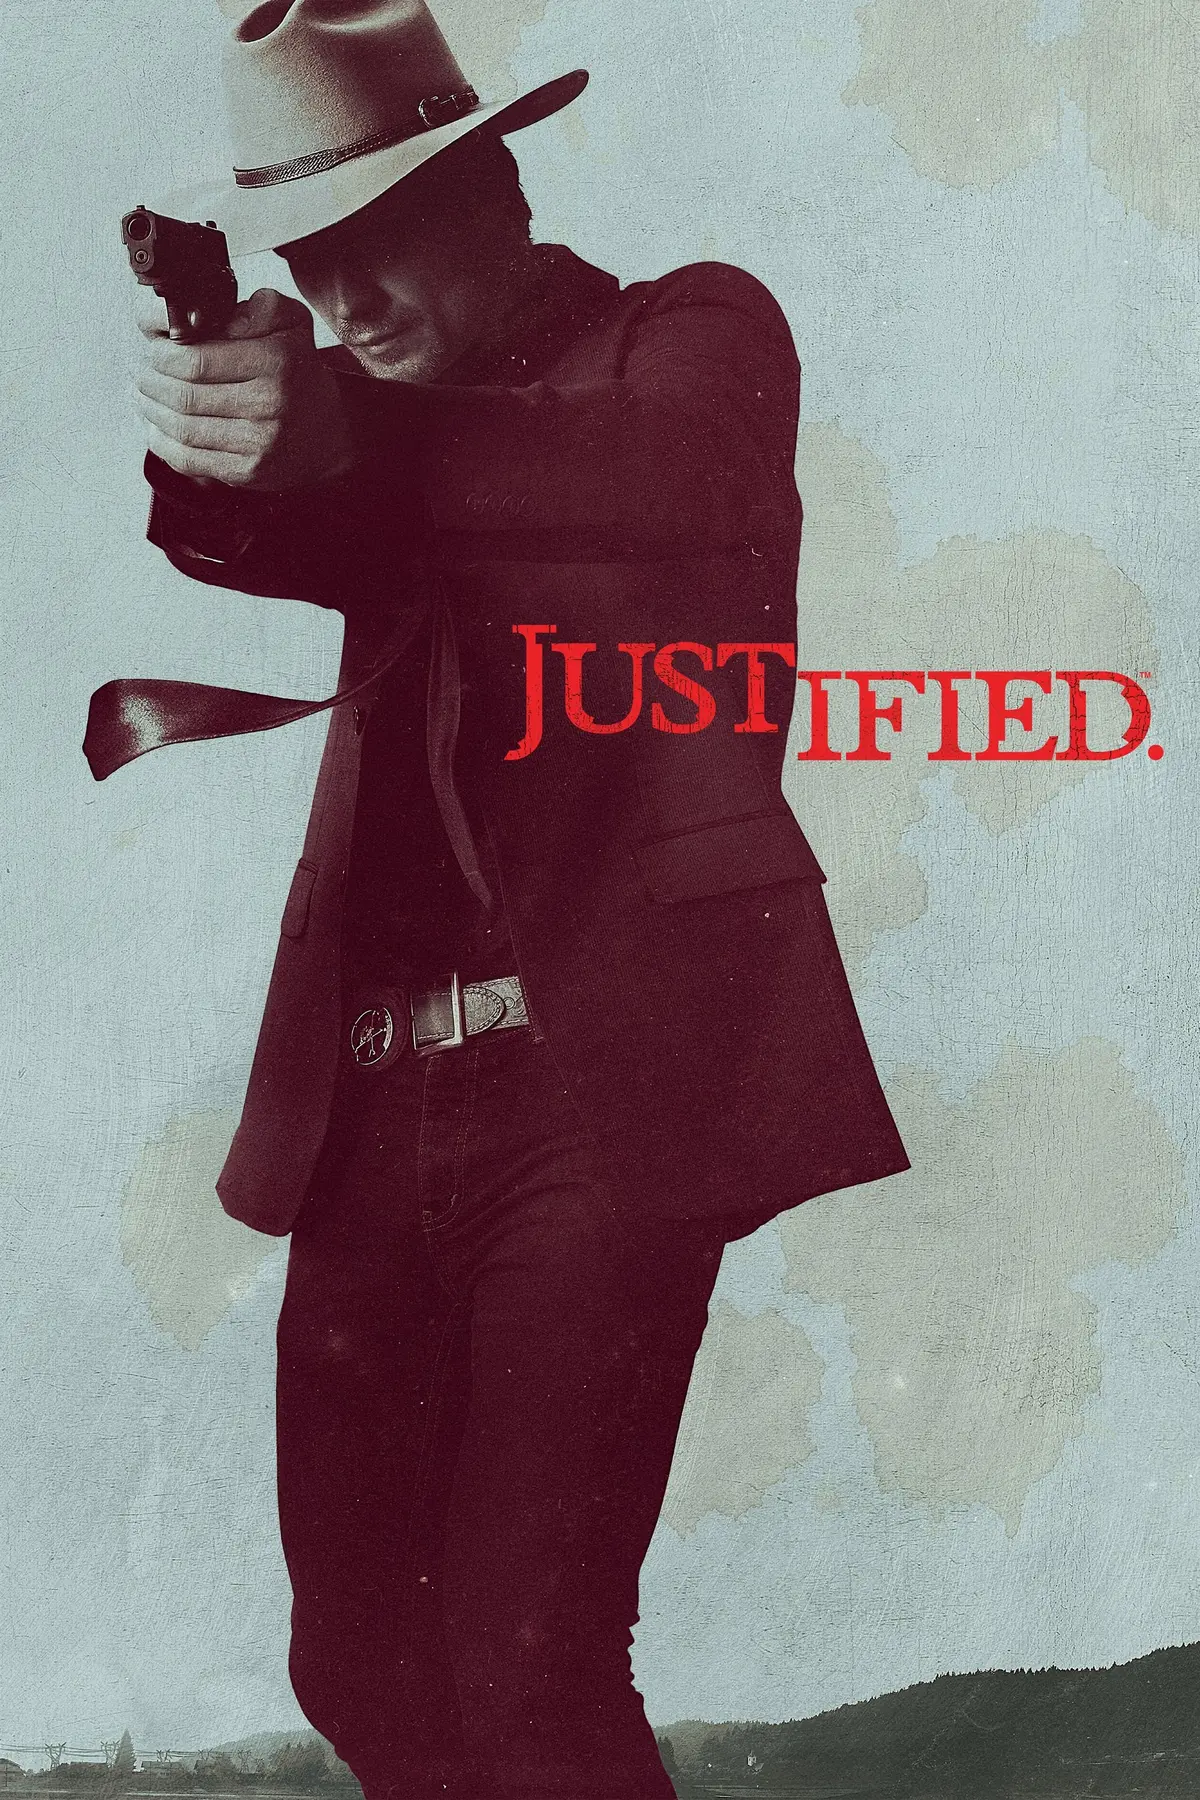 Justified S05E04 Cadavre baladeur